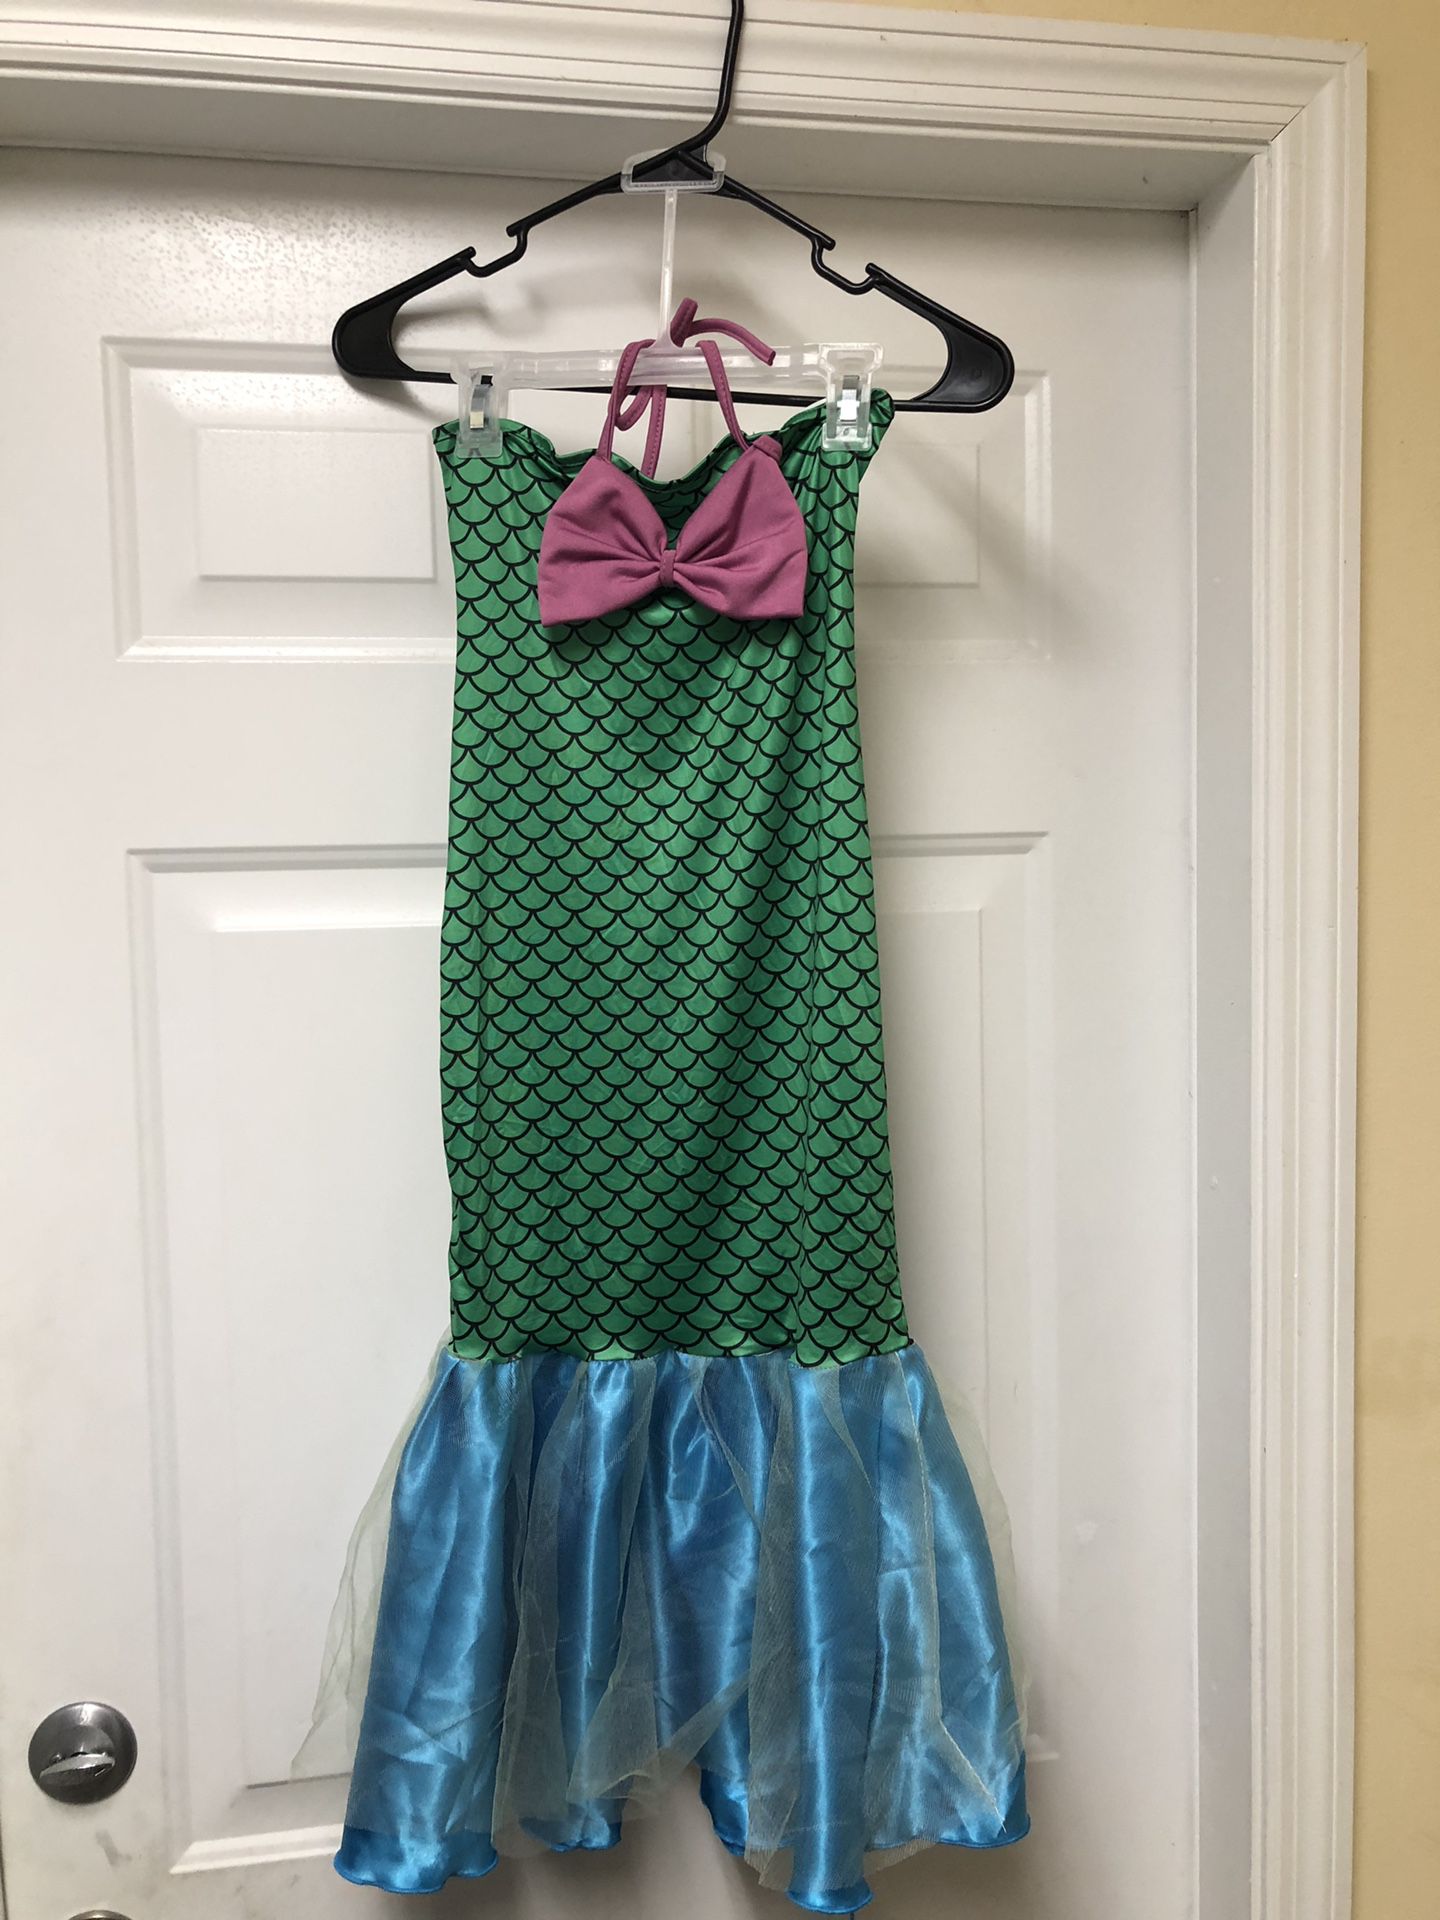 Brand new mermaid dress